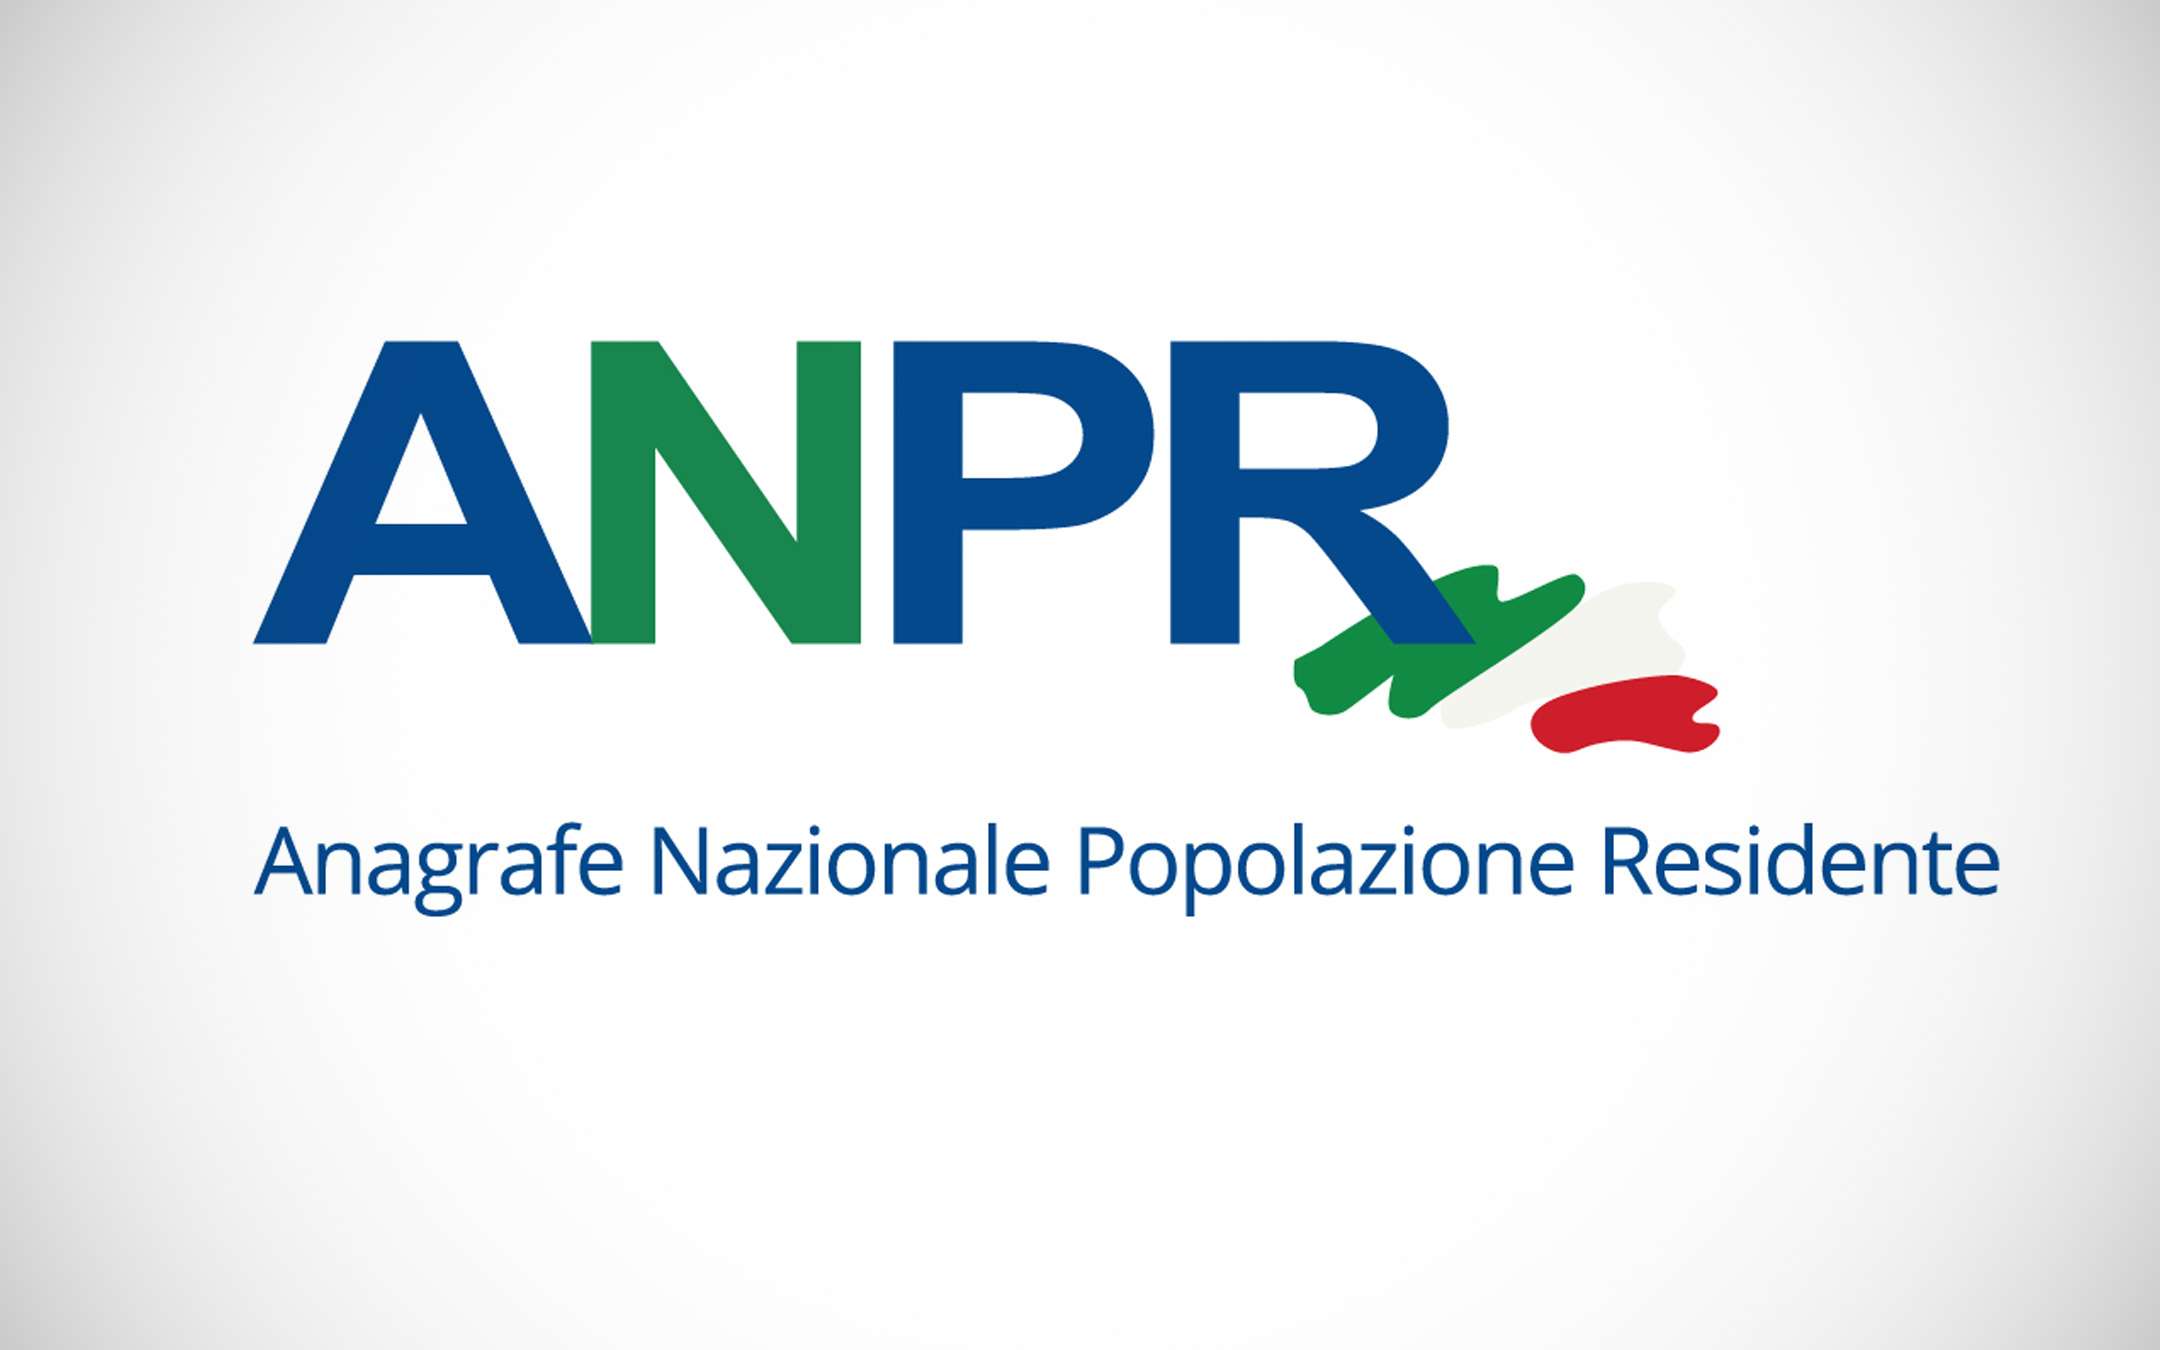 Rilascio delle certificazioni autonomamente tramite il portale ANPR